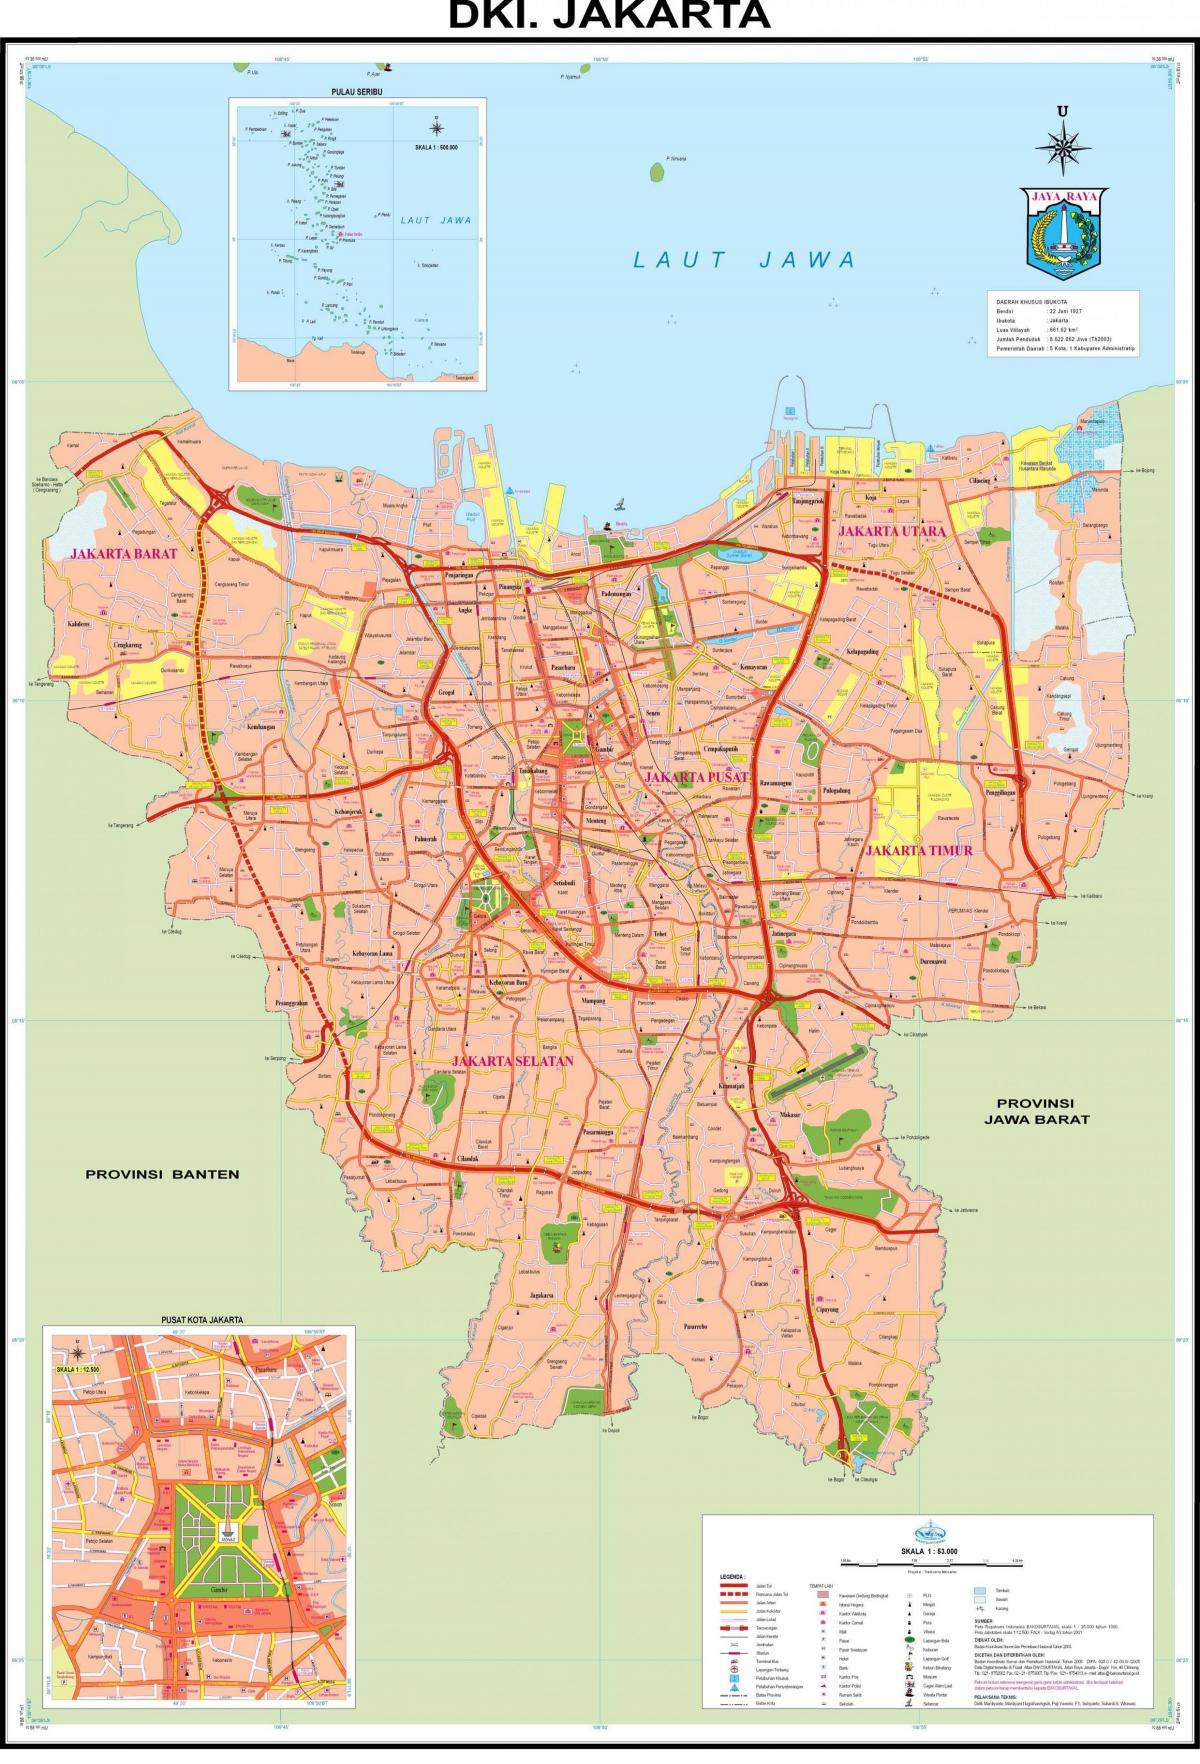 Град Джакарта картата